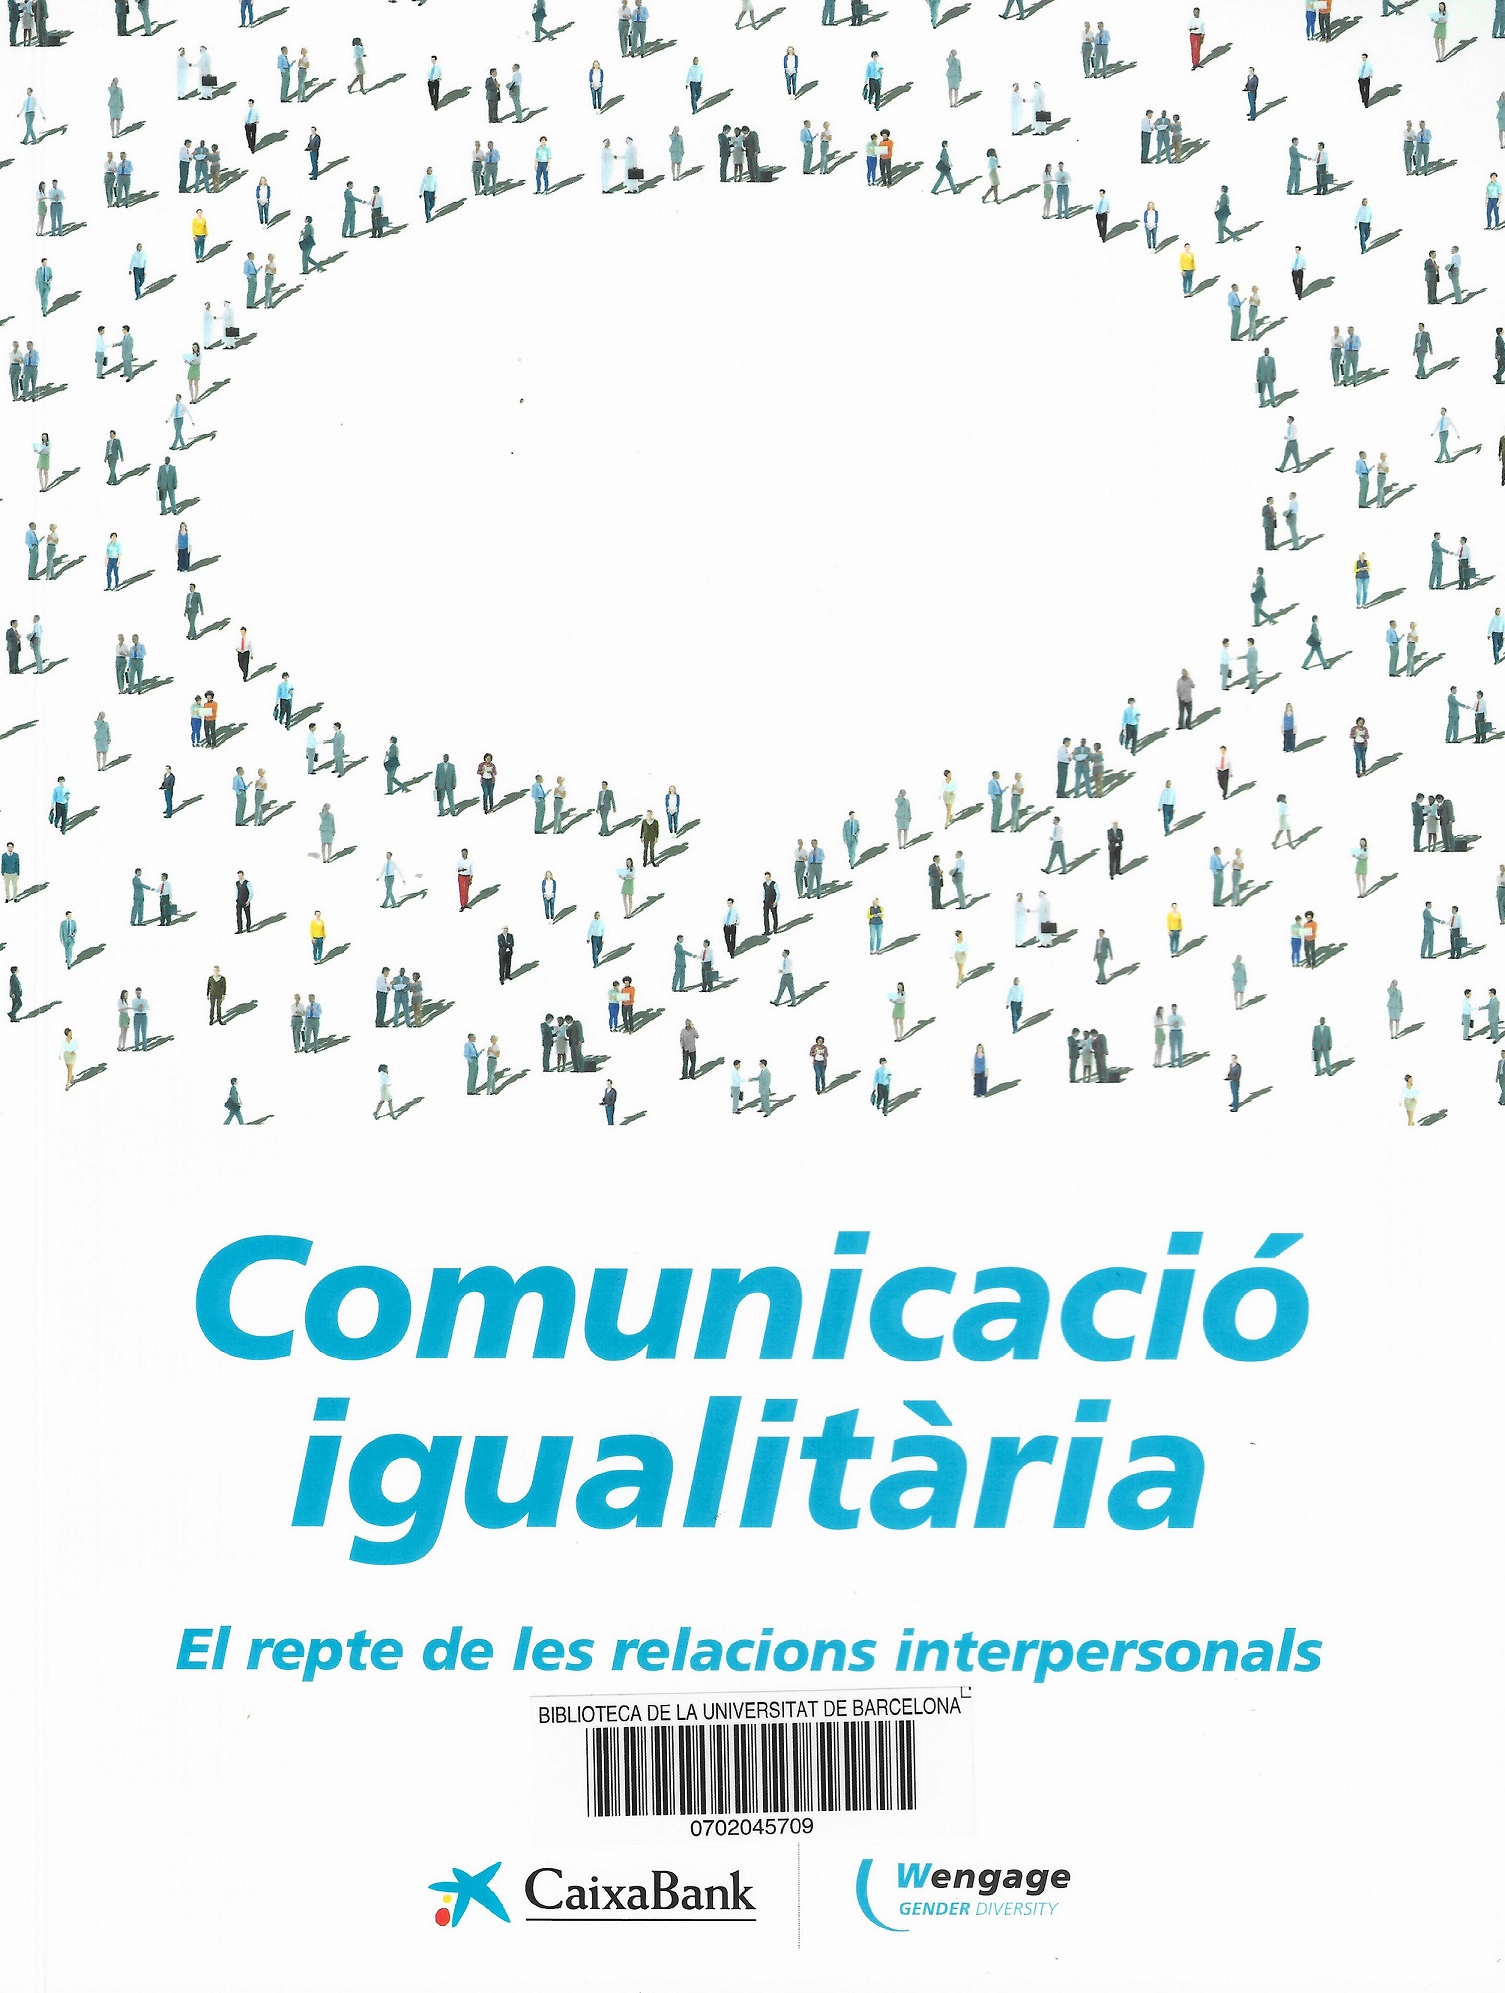 Imagen de portada del libro Comunicació igualitària